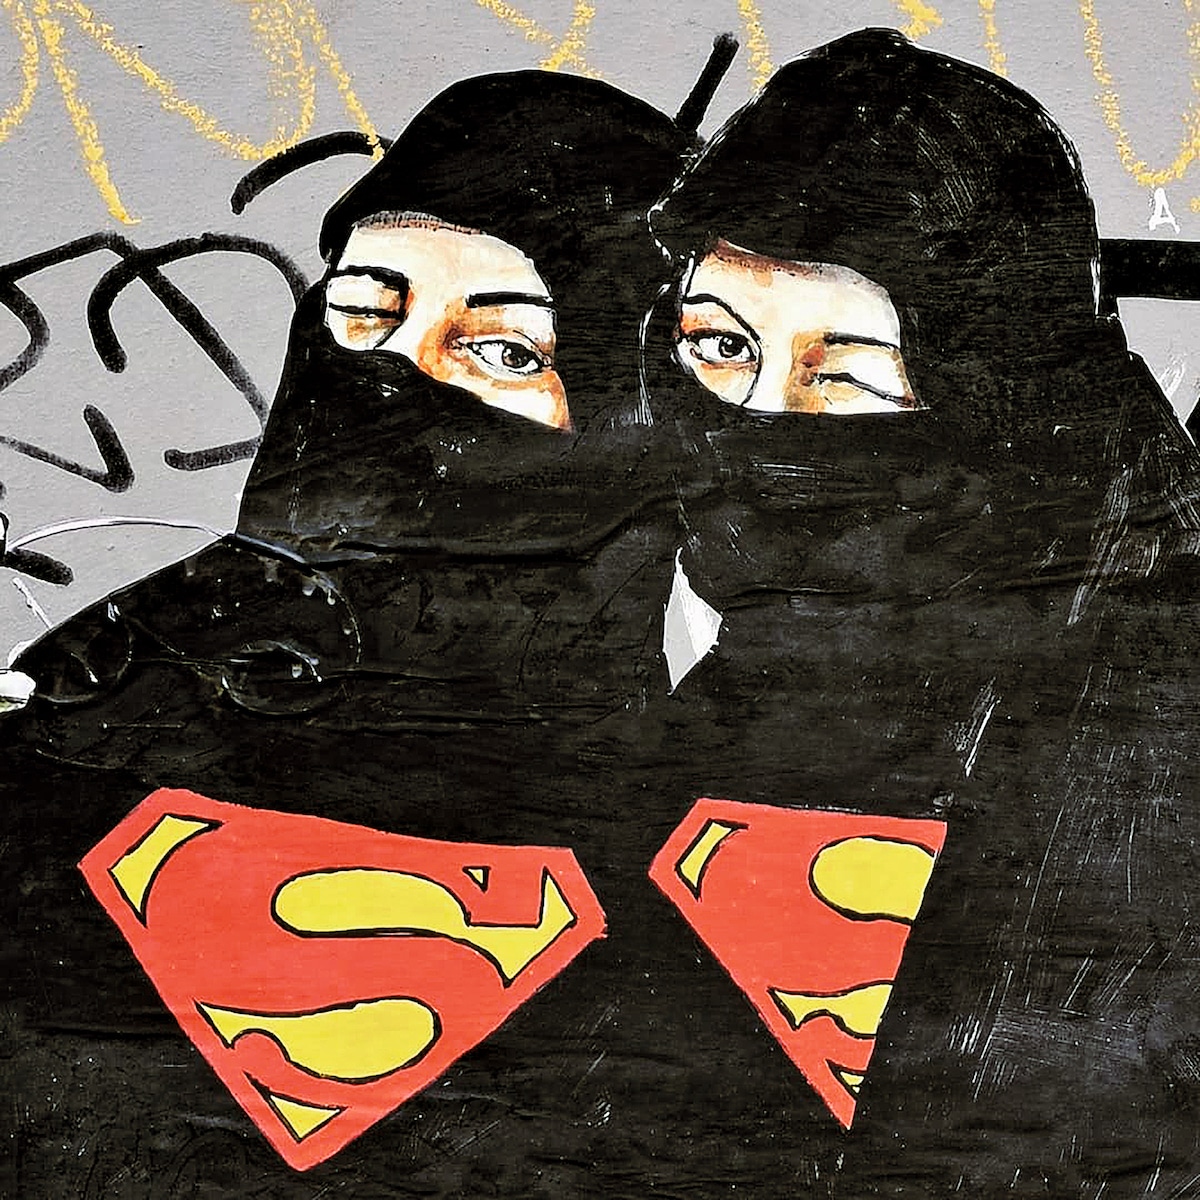 Superwomen Burqa Poster by #LEDIESIS